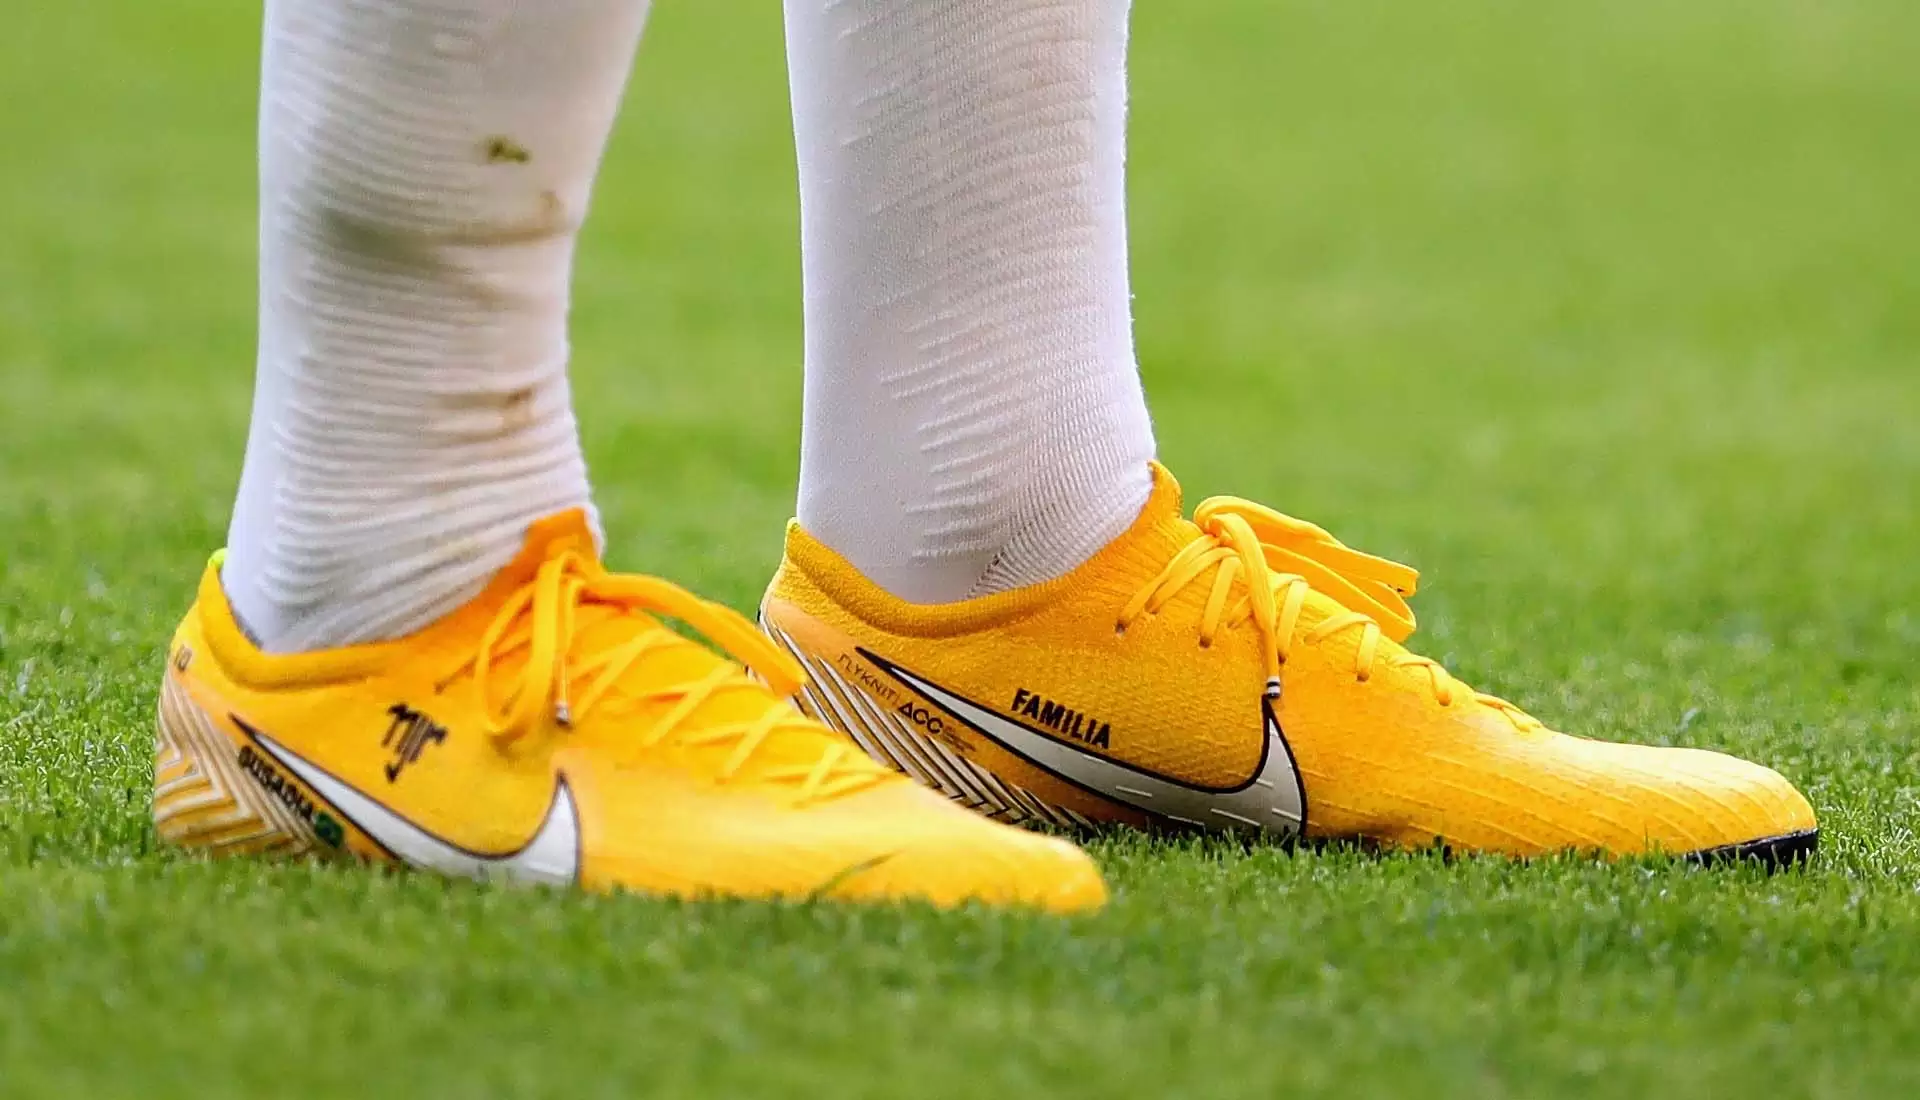 Propuesta Articulación Partido Nike presentó uno de los modelos más lindos de botines inspirados en Neymar  y la Copa del Mundo